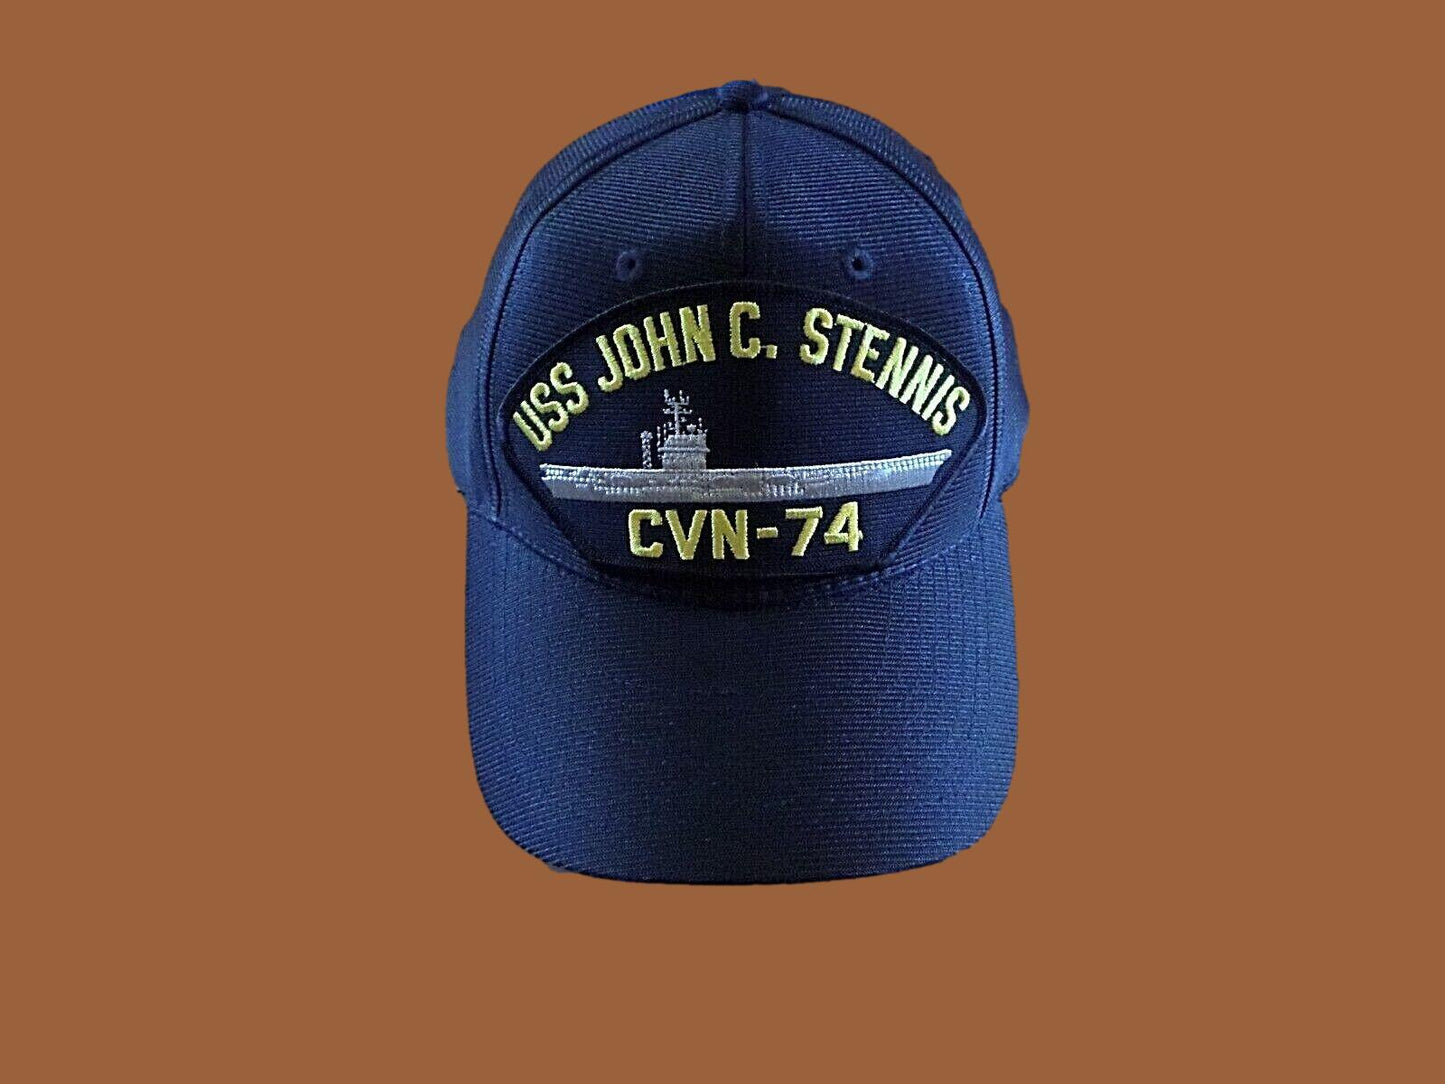 USS JOHN C. STENNIS CVN-74 US NAVY SHIP HAT OFFICIAL U.S MILITARY BALL CAP USA